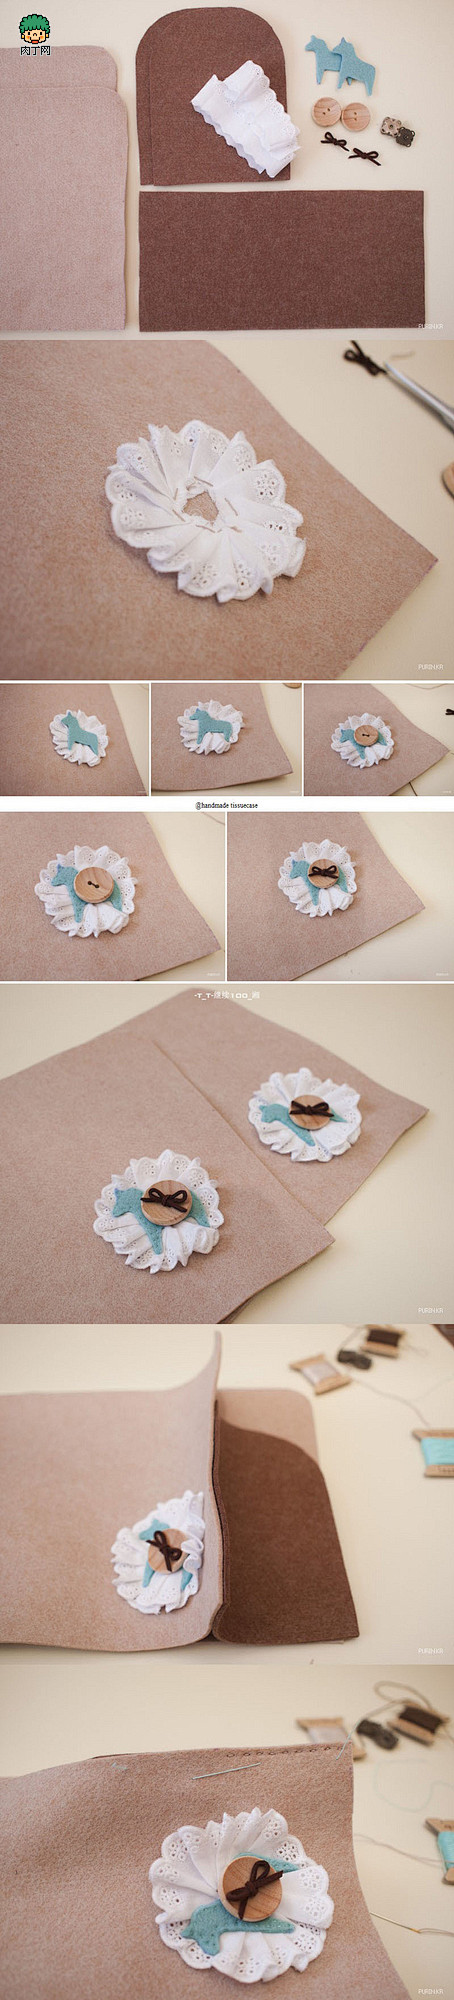 教你用皮革或不织布面料DIY自制纸巾盒-